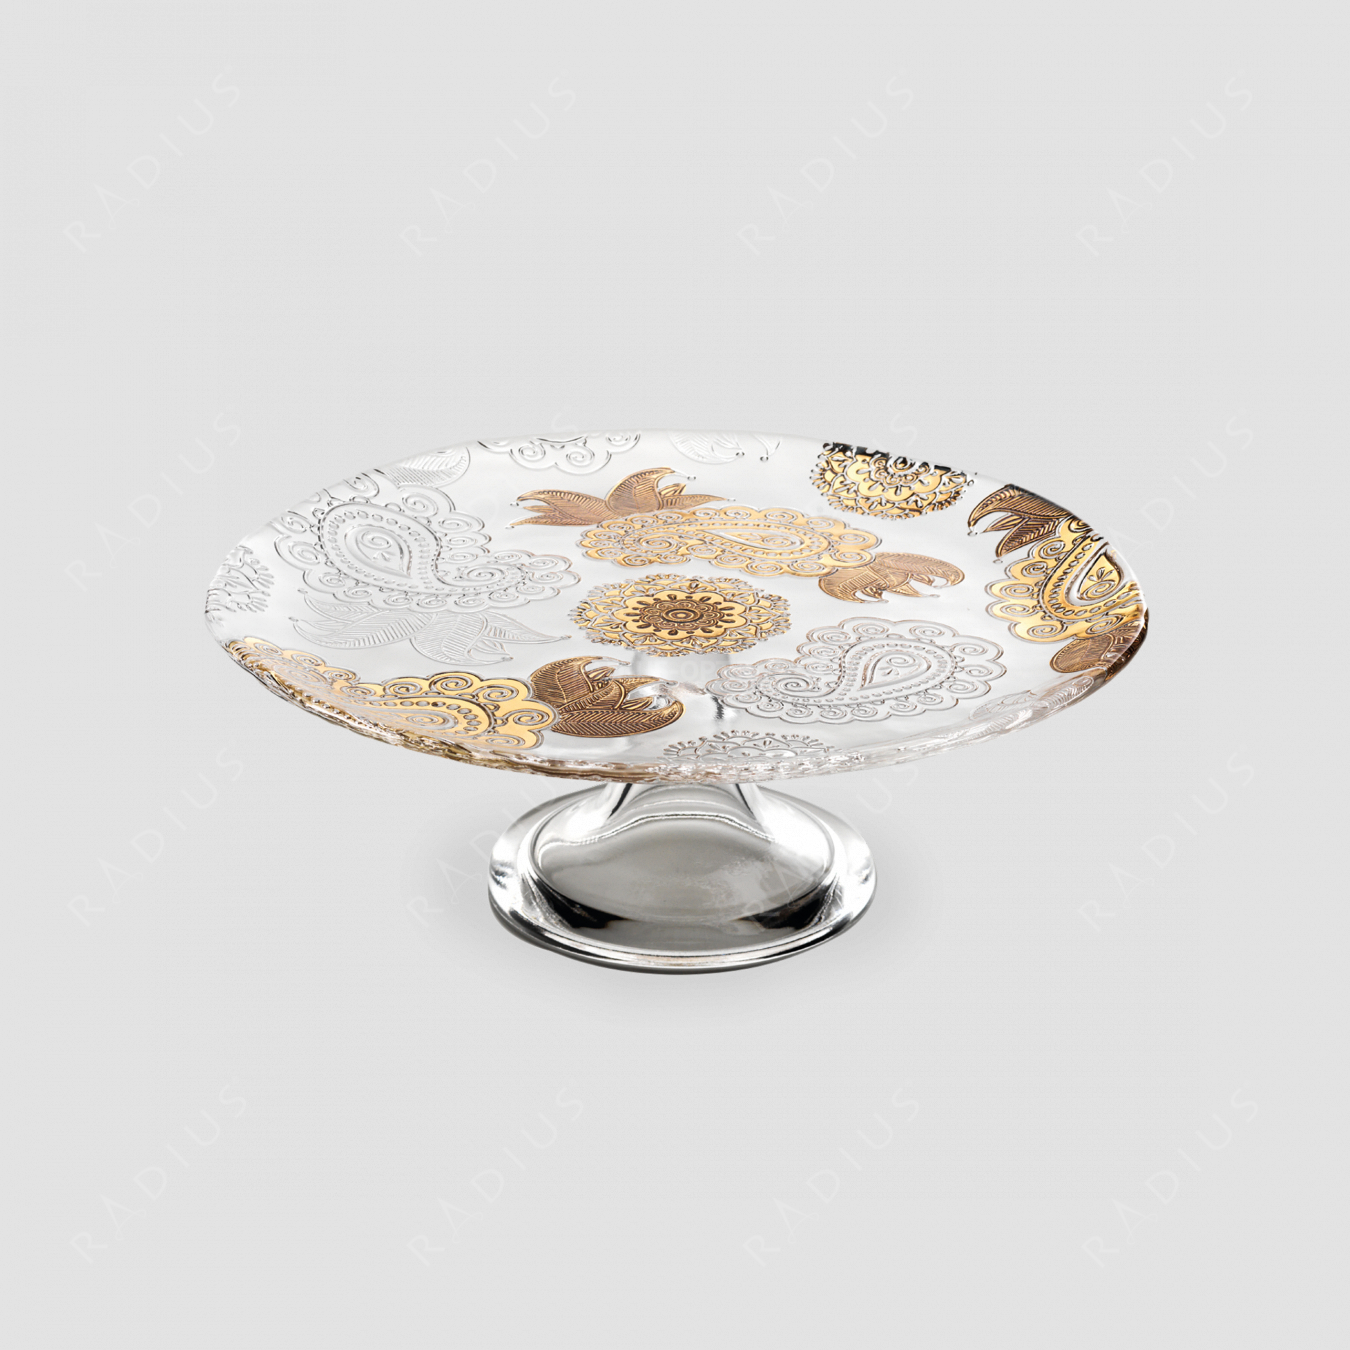 Блюдо для торта на ножке, диаметр: 30 см, высота: 11 см, материал: стекло, цвет: золото, серия Pashmina, IVV (Italy), Италия